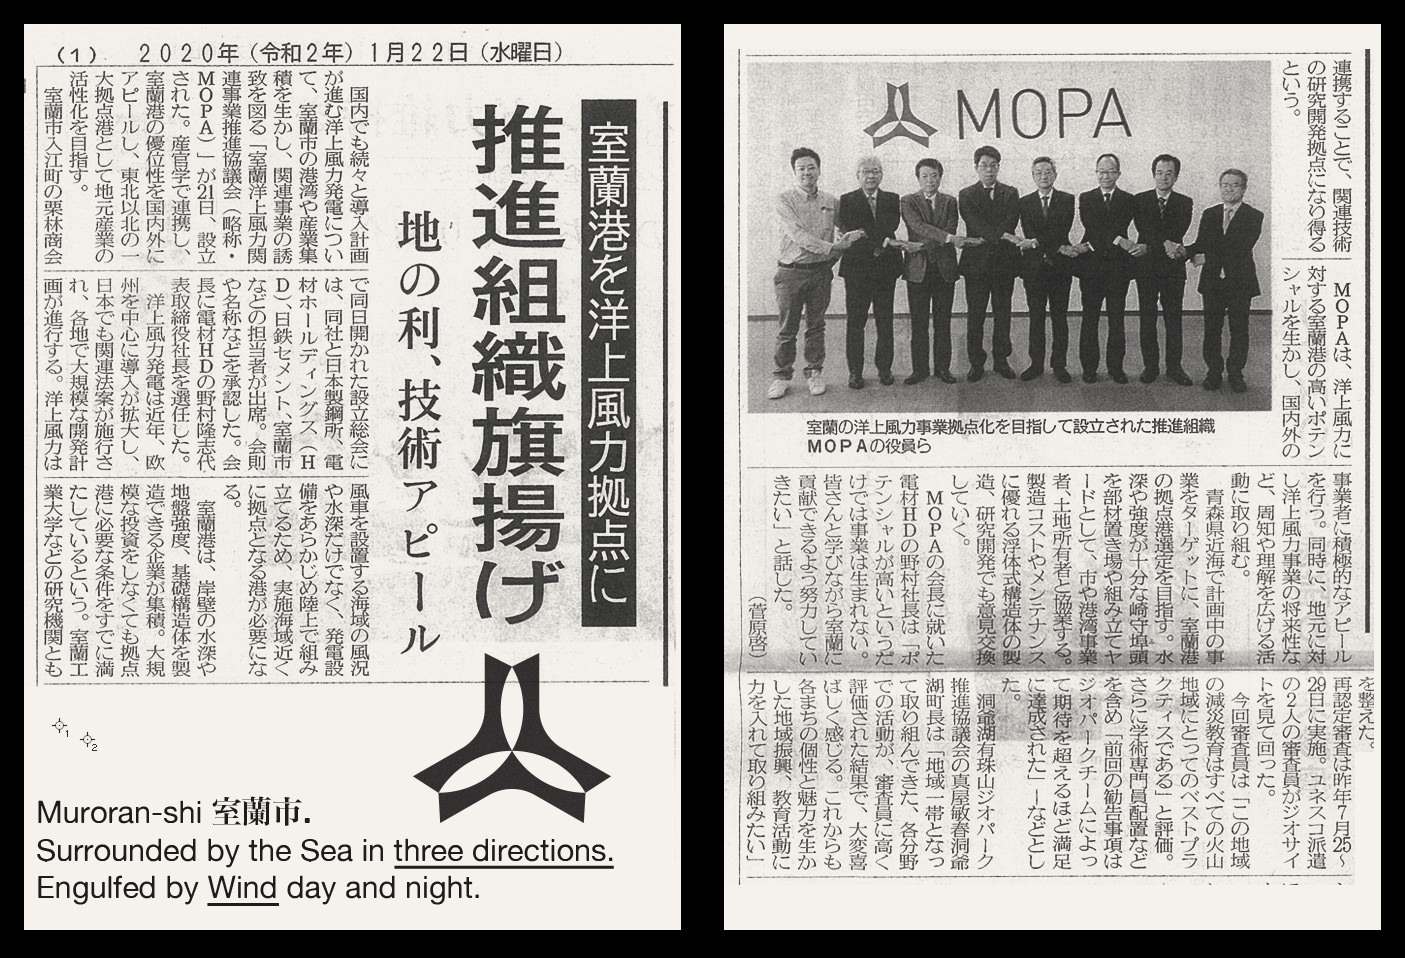 mopa-logo-vacaliebres-hokkaido-japan-logo-denzai-group-corporate-identity-windturbines-shi